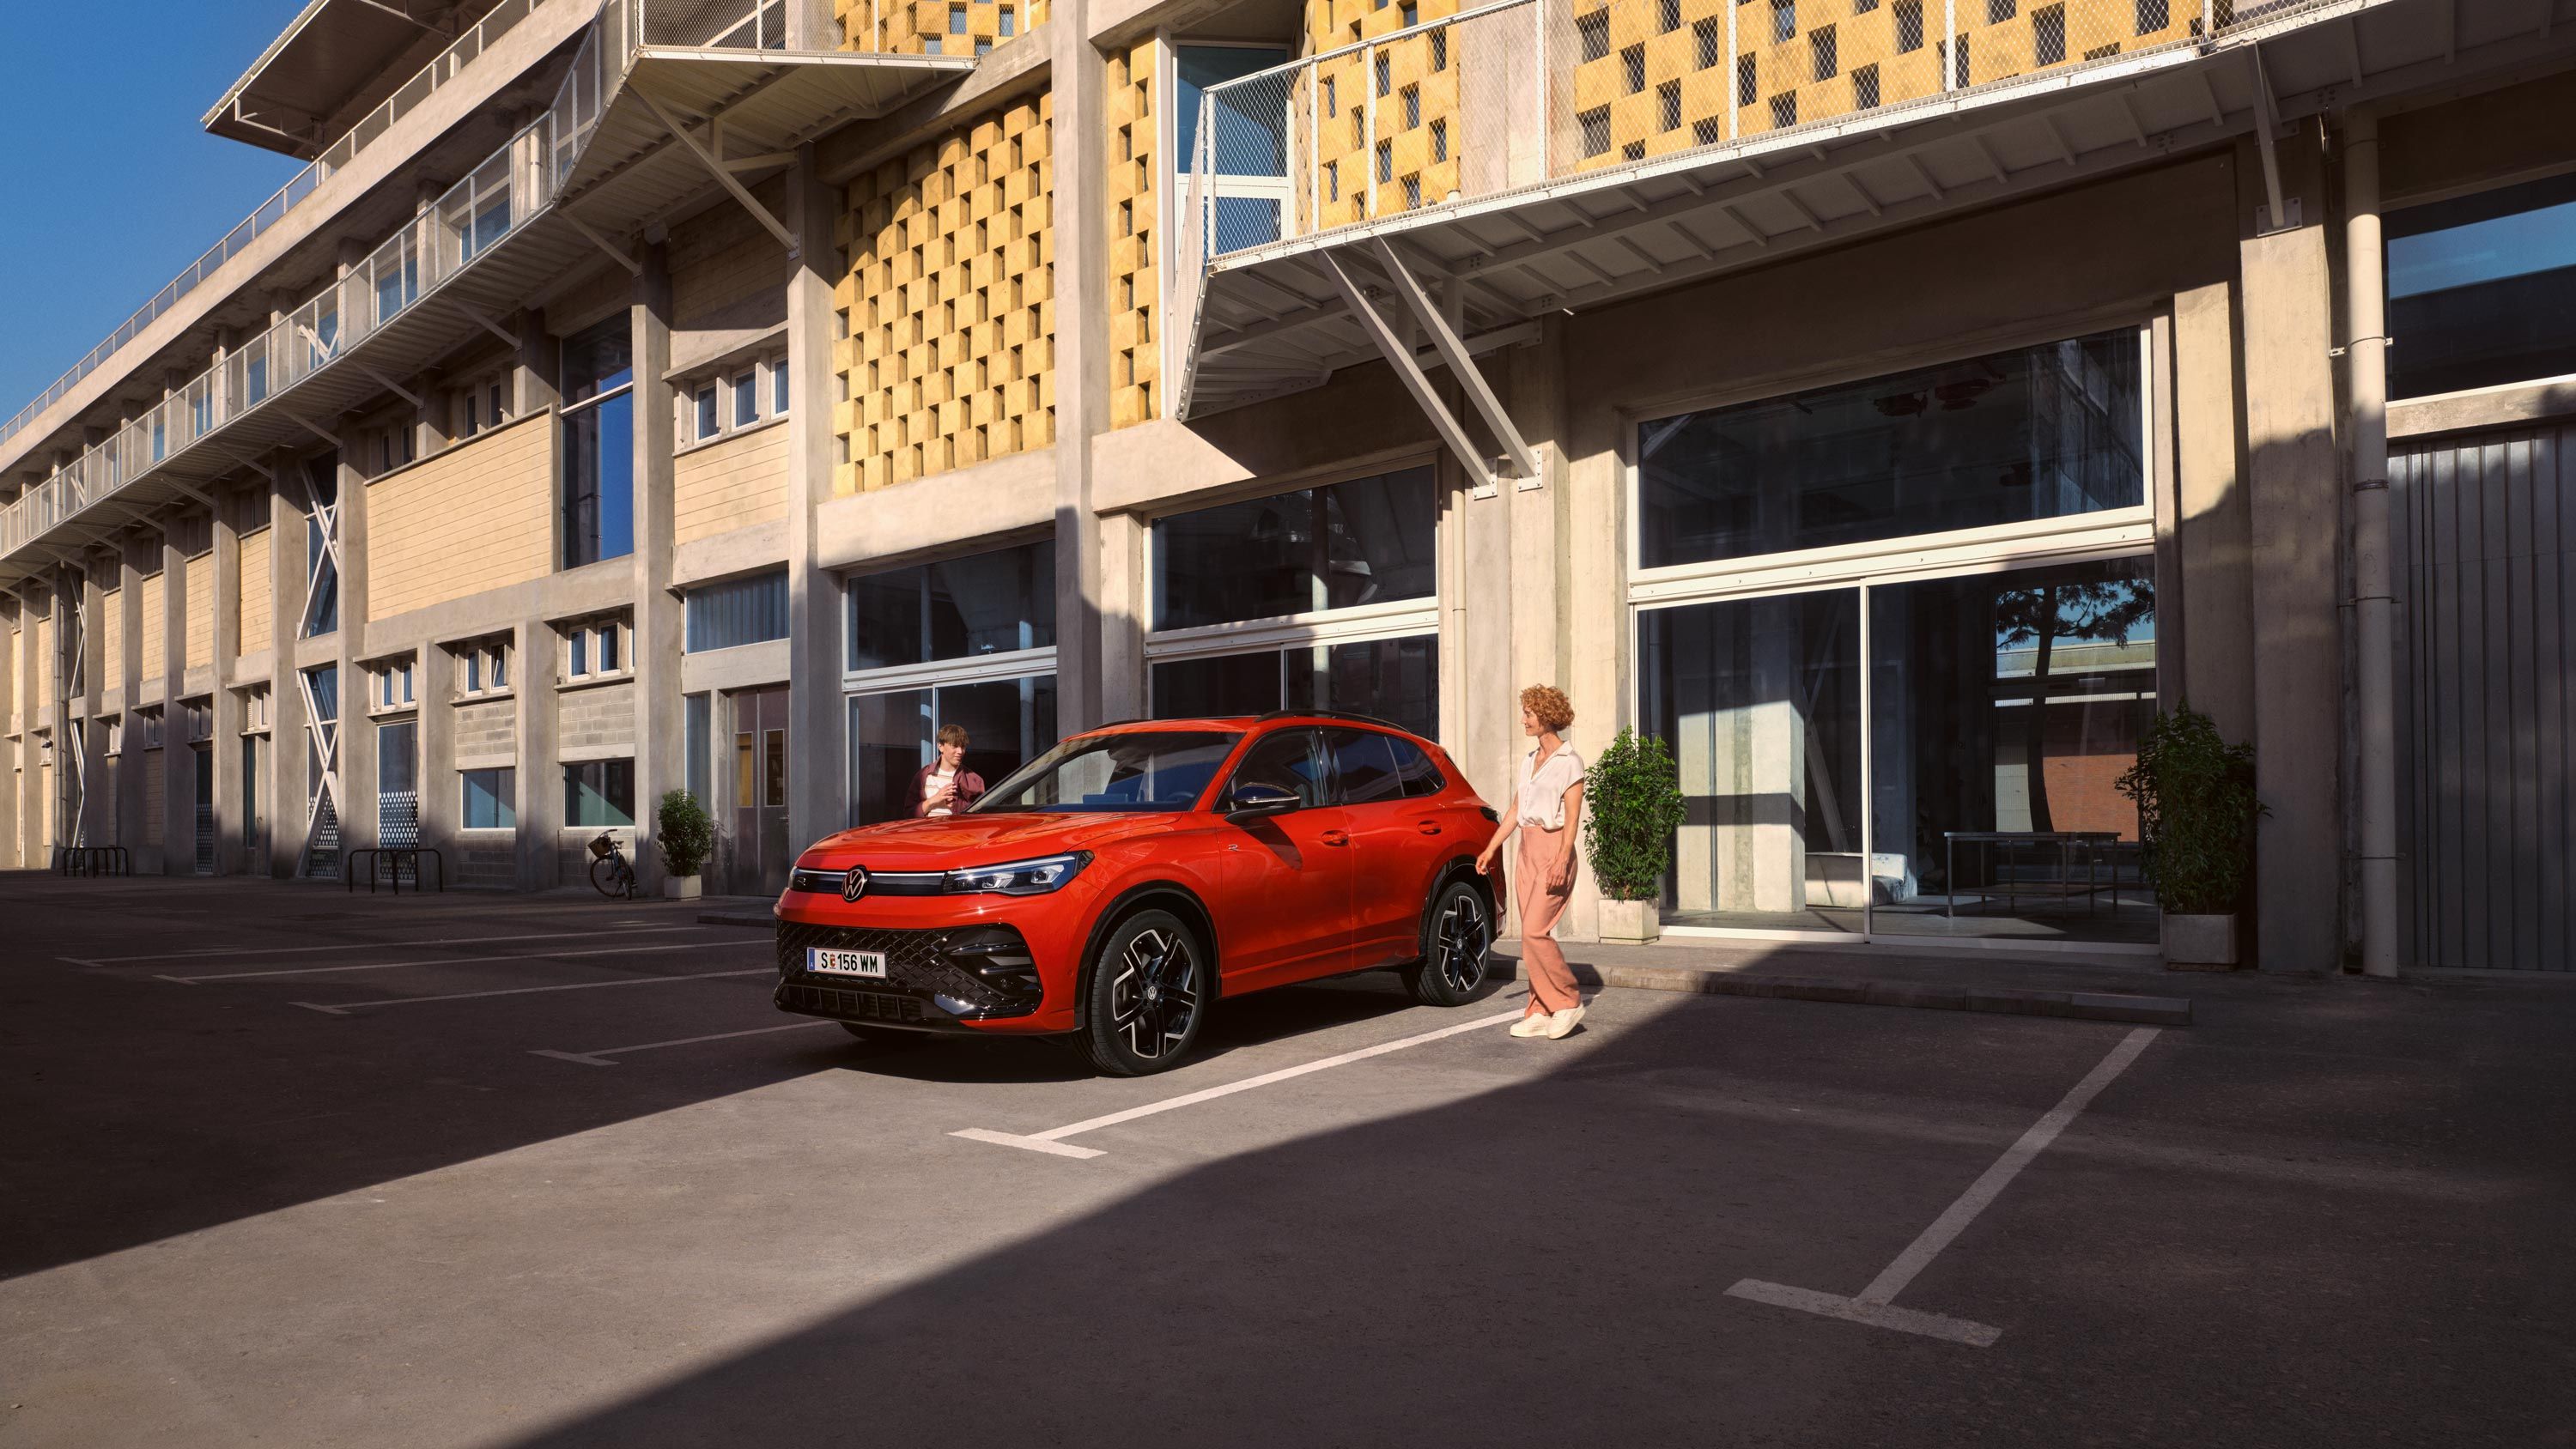 Roter VW Tiguan in Seitenansicht steht vor einem Gebäude, eine junge Frau geht auf der Fahrerseite vorbei.